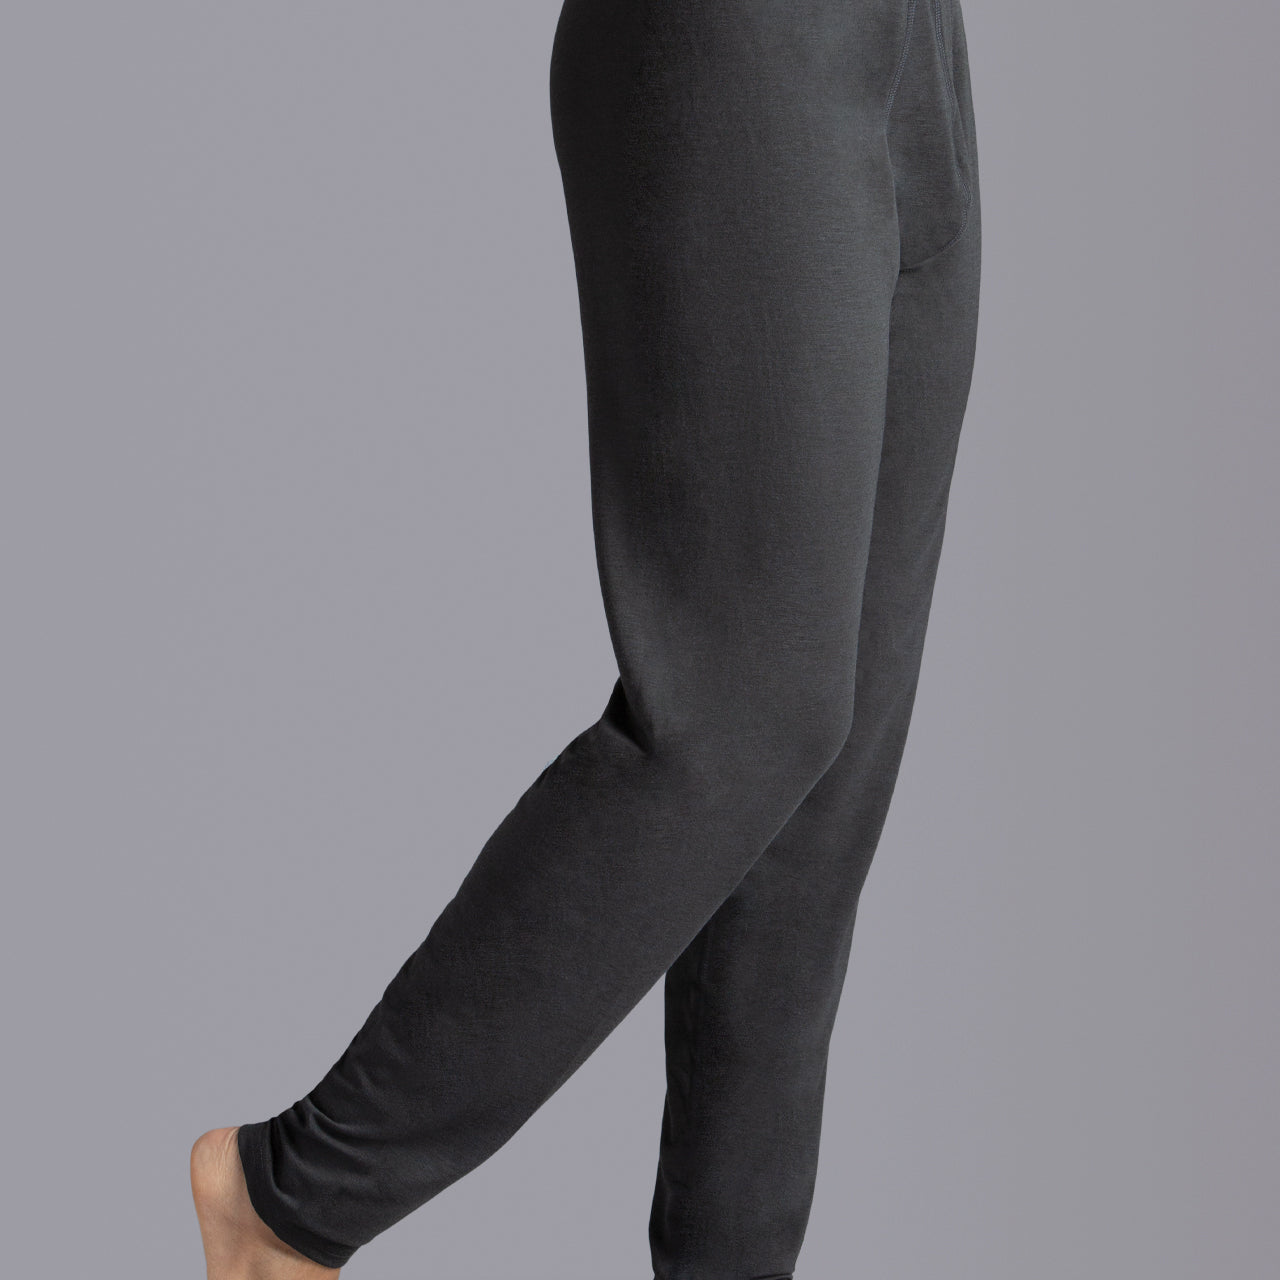 Women's Winter Leggings Slimming Velvet Thermal Pants Grey Tight